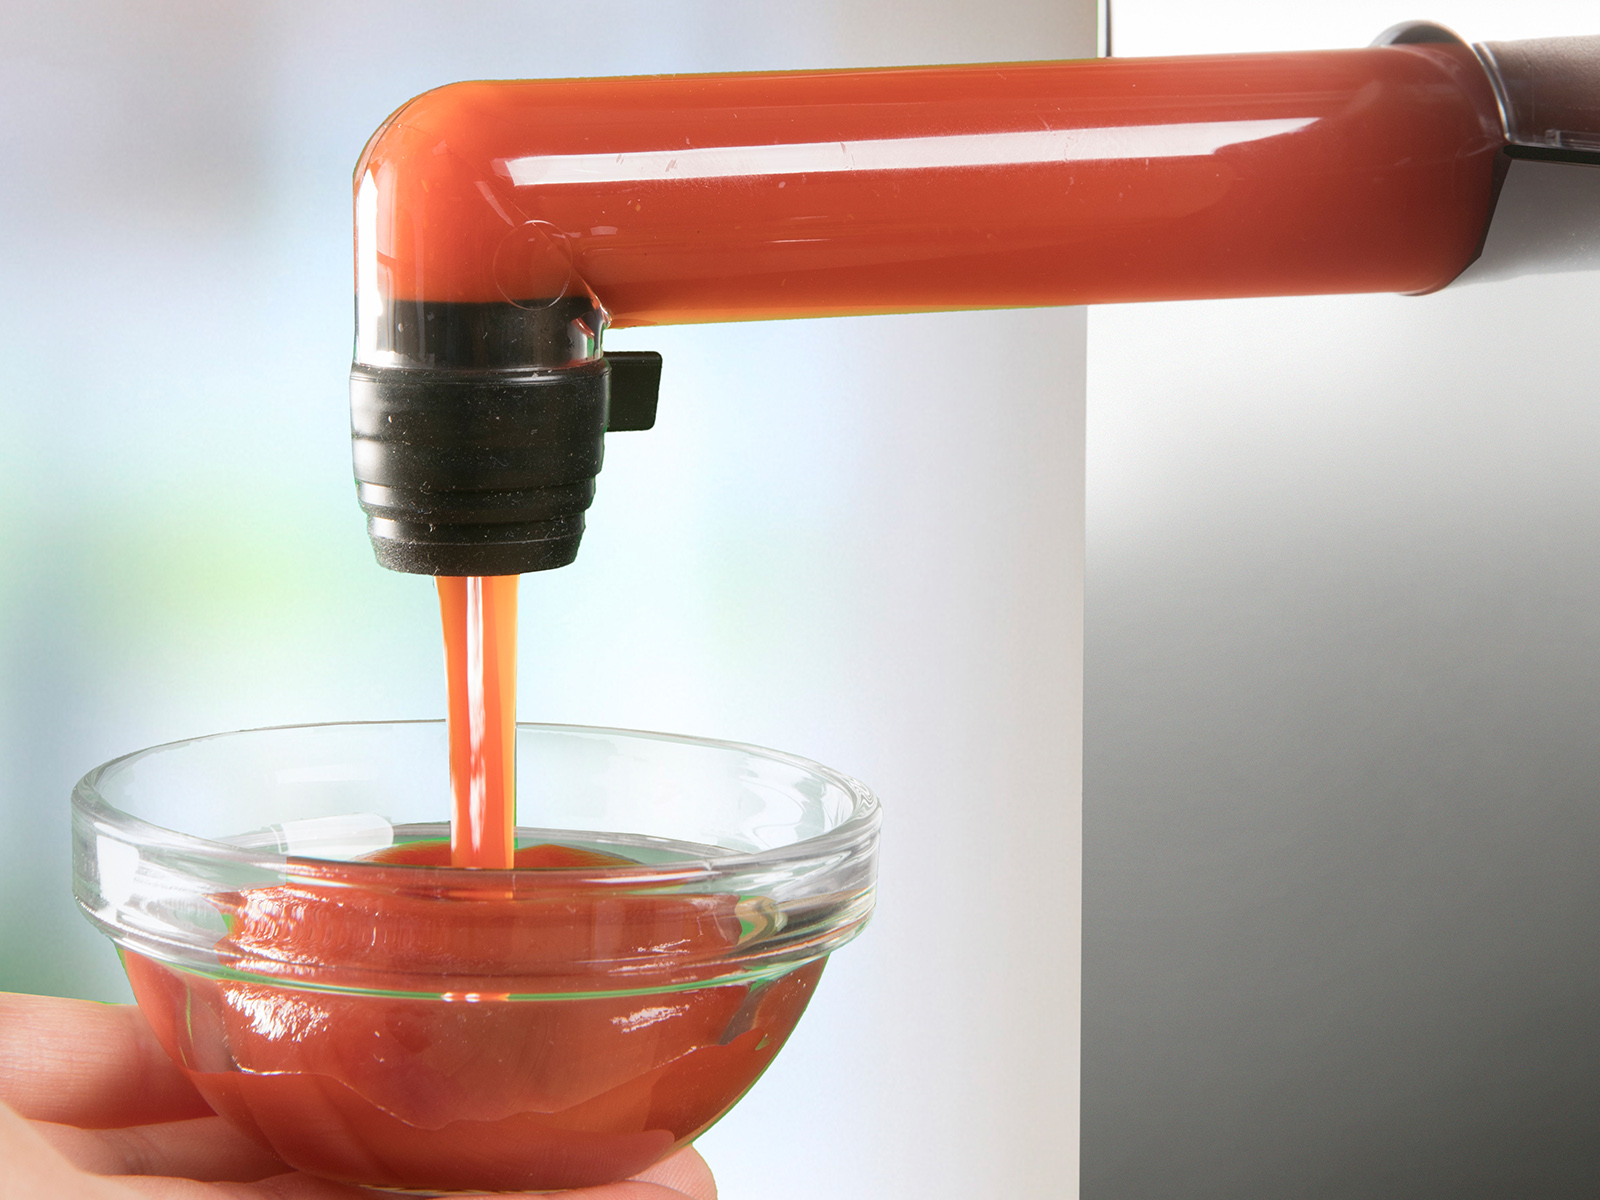 Detailed pump and ketchup image